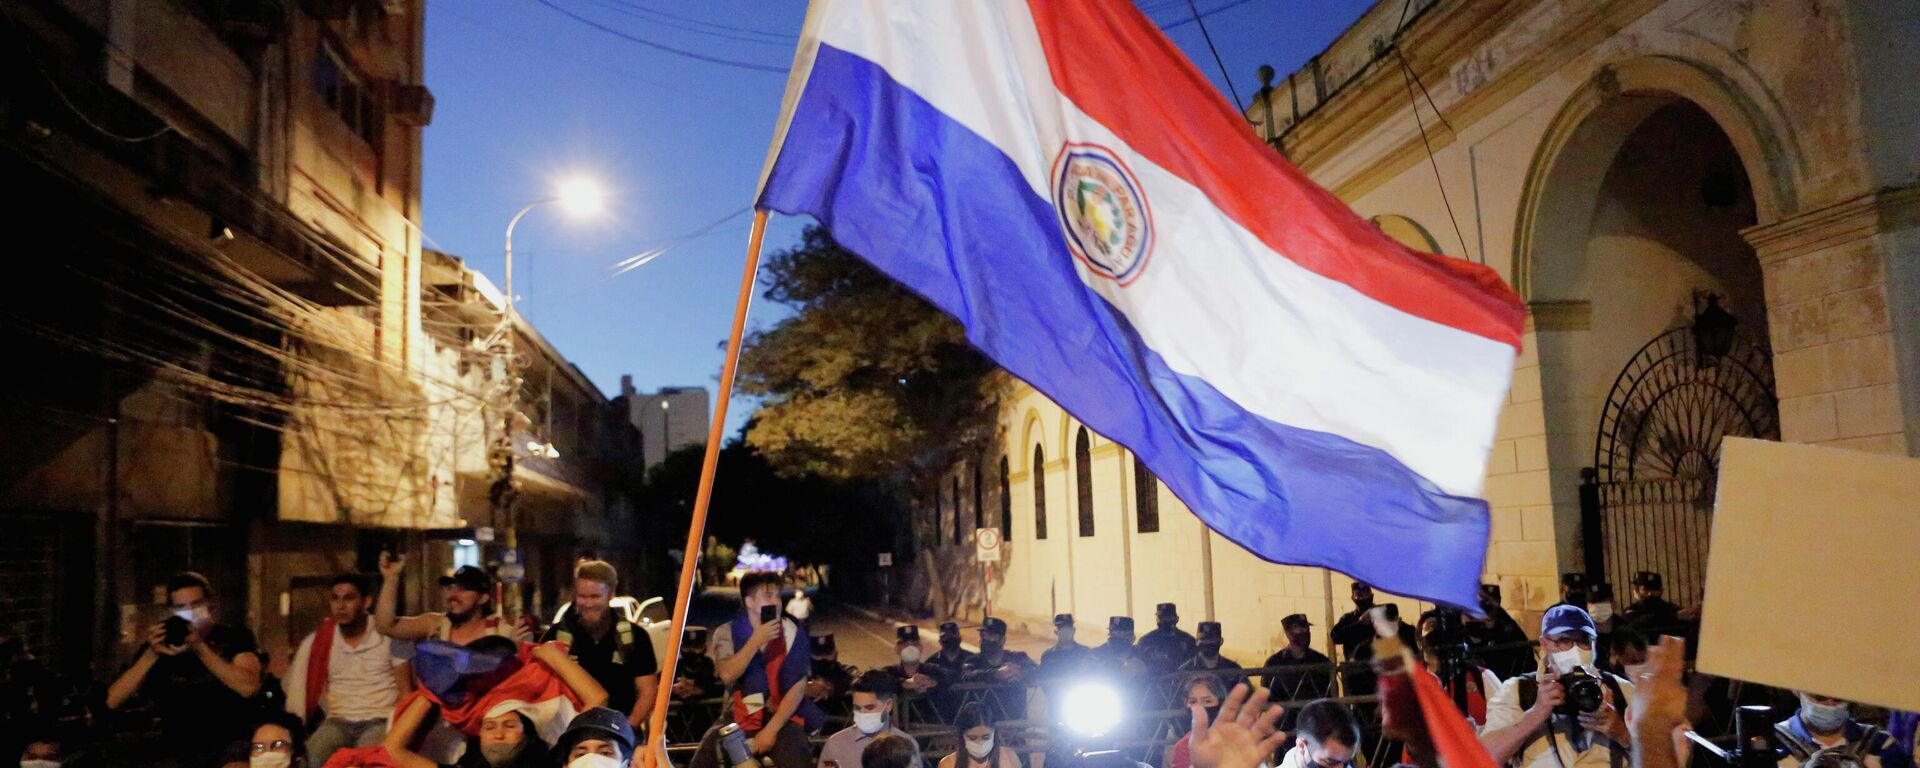 Protestas en Paraguay - Sputnik Mundo, 1920, 10.03.2021